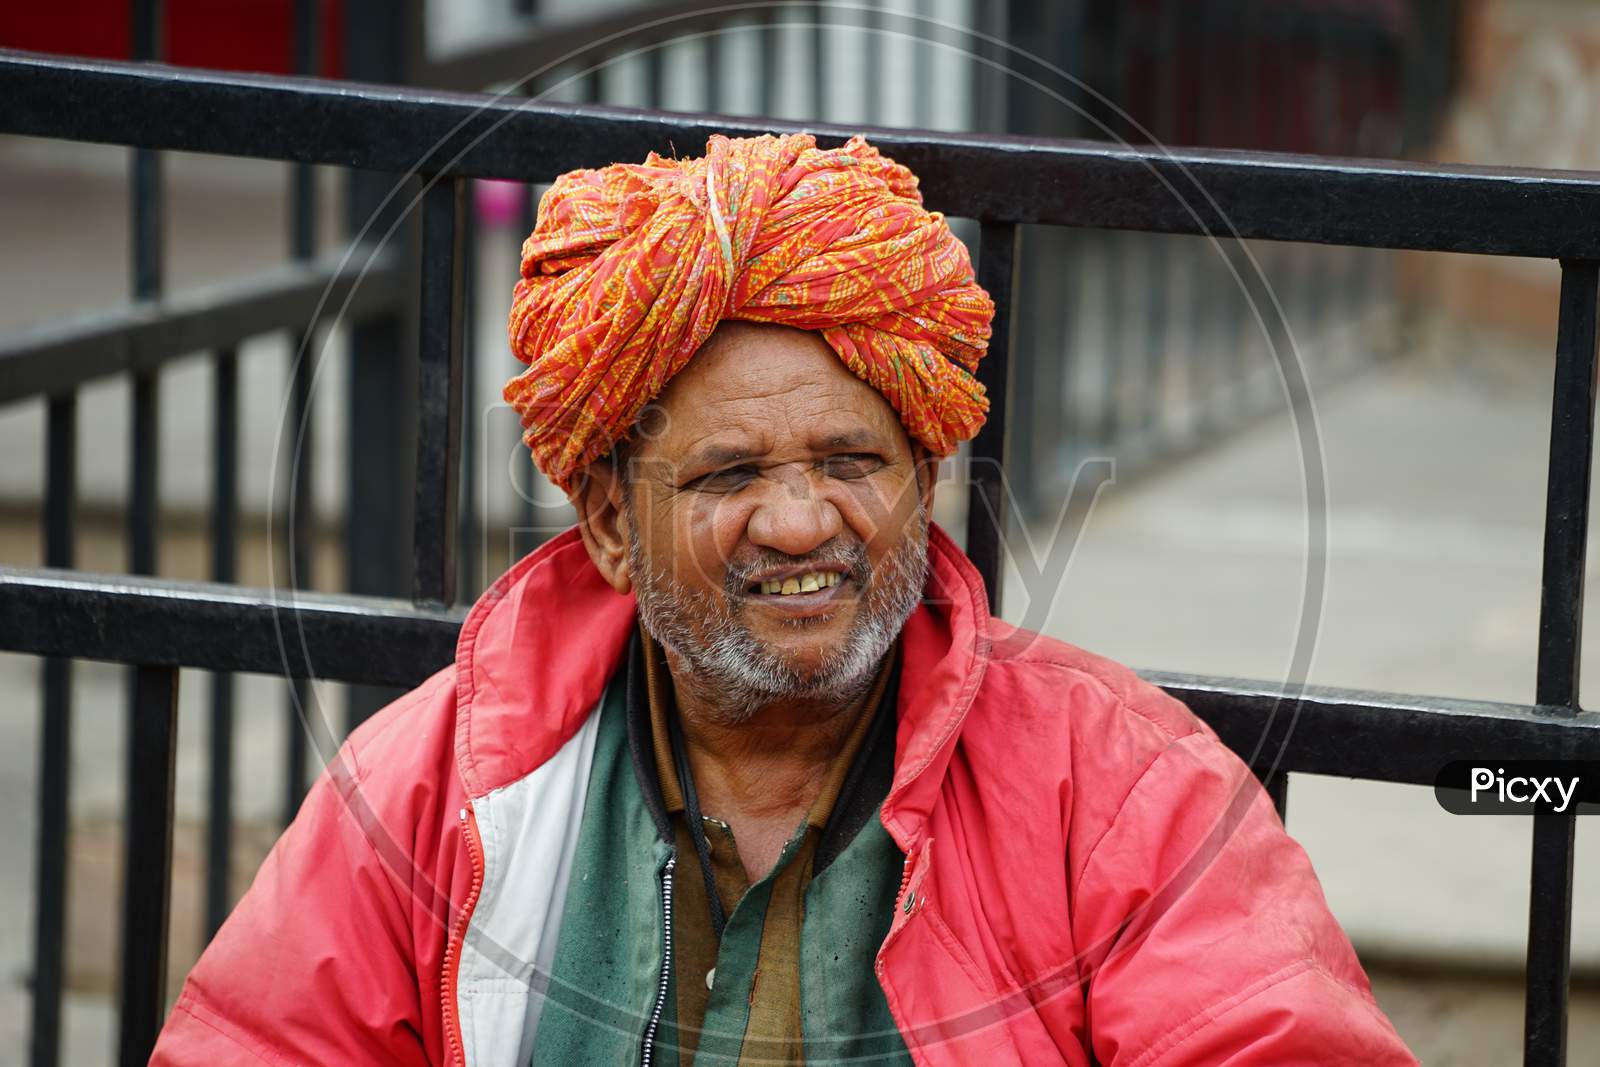 Indian elderly man smiling wearing turban